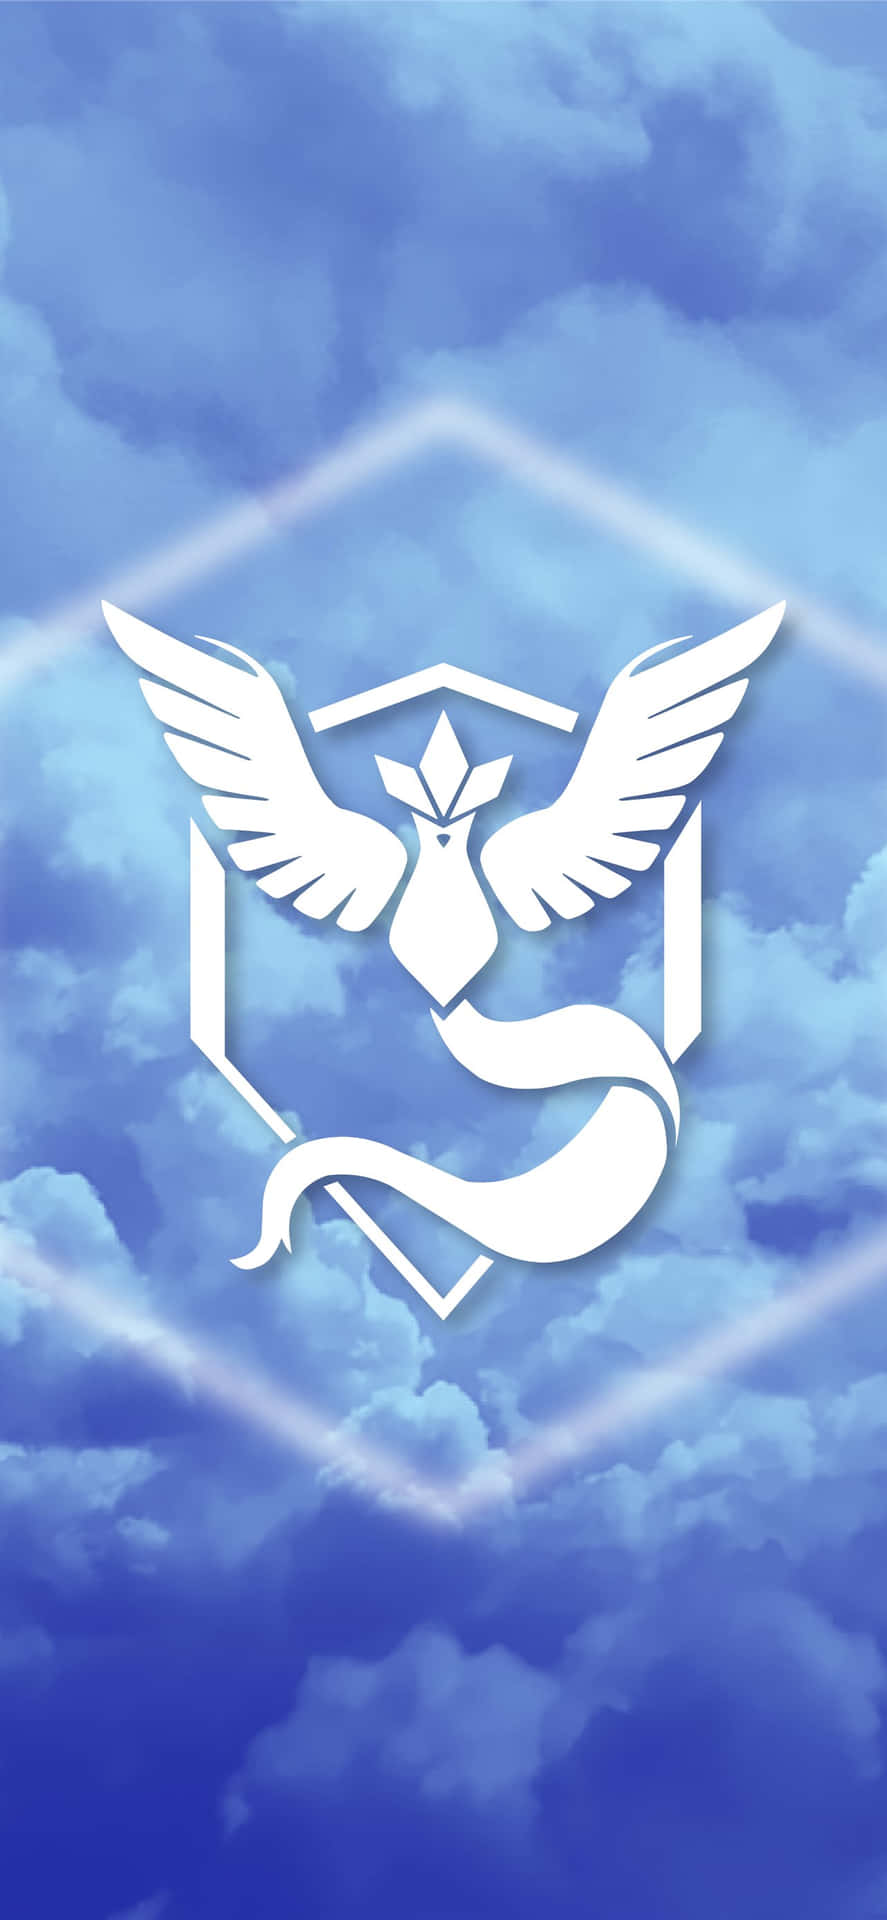 Et pokemon logo med vinger i himlen Wallpaper